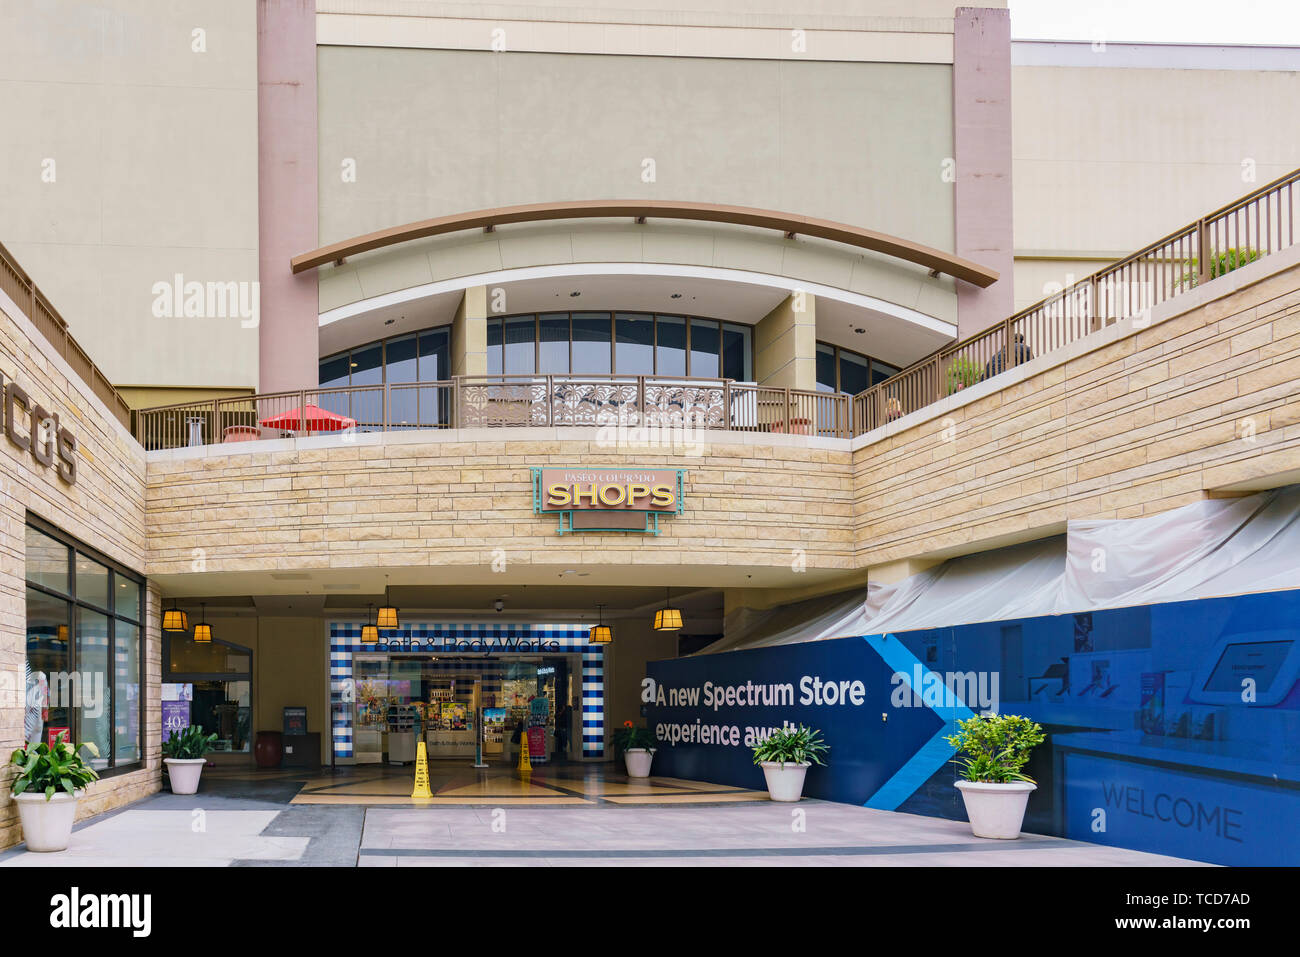 Pasadena, MAY 8: Exterior view of some shops in a shopping mall on MAY 8,  2019 at Pasadena, California Stock Photo - Alamy